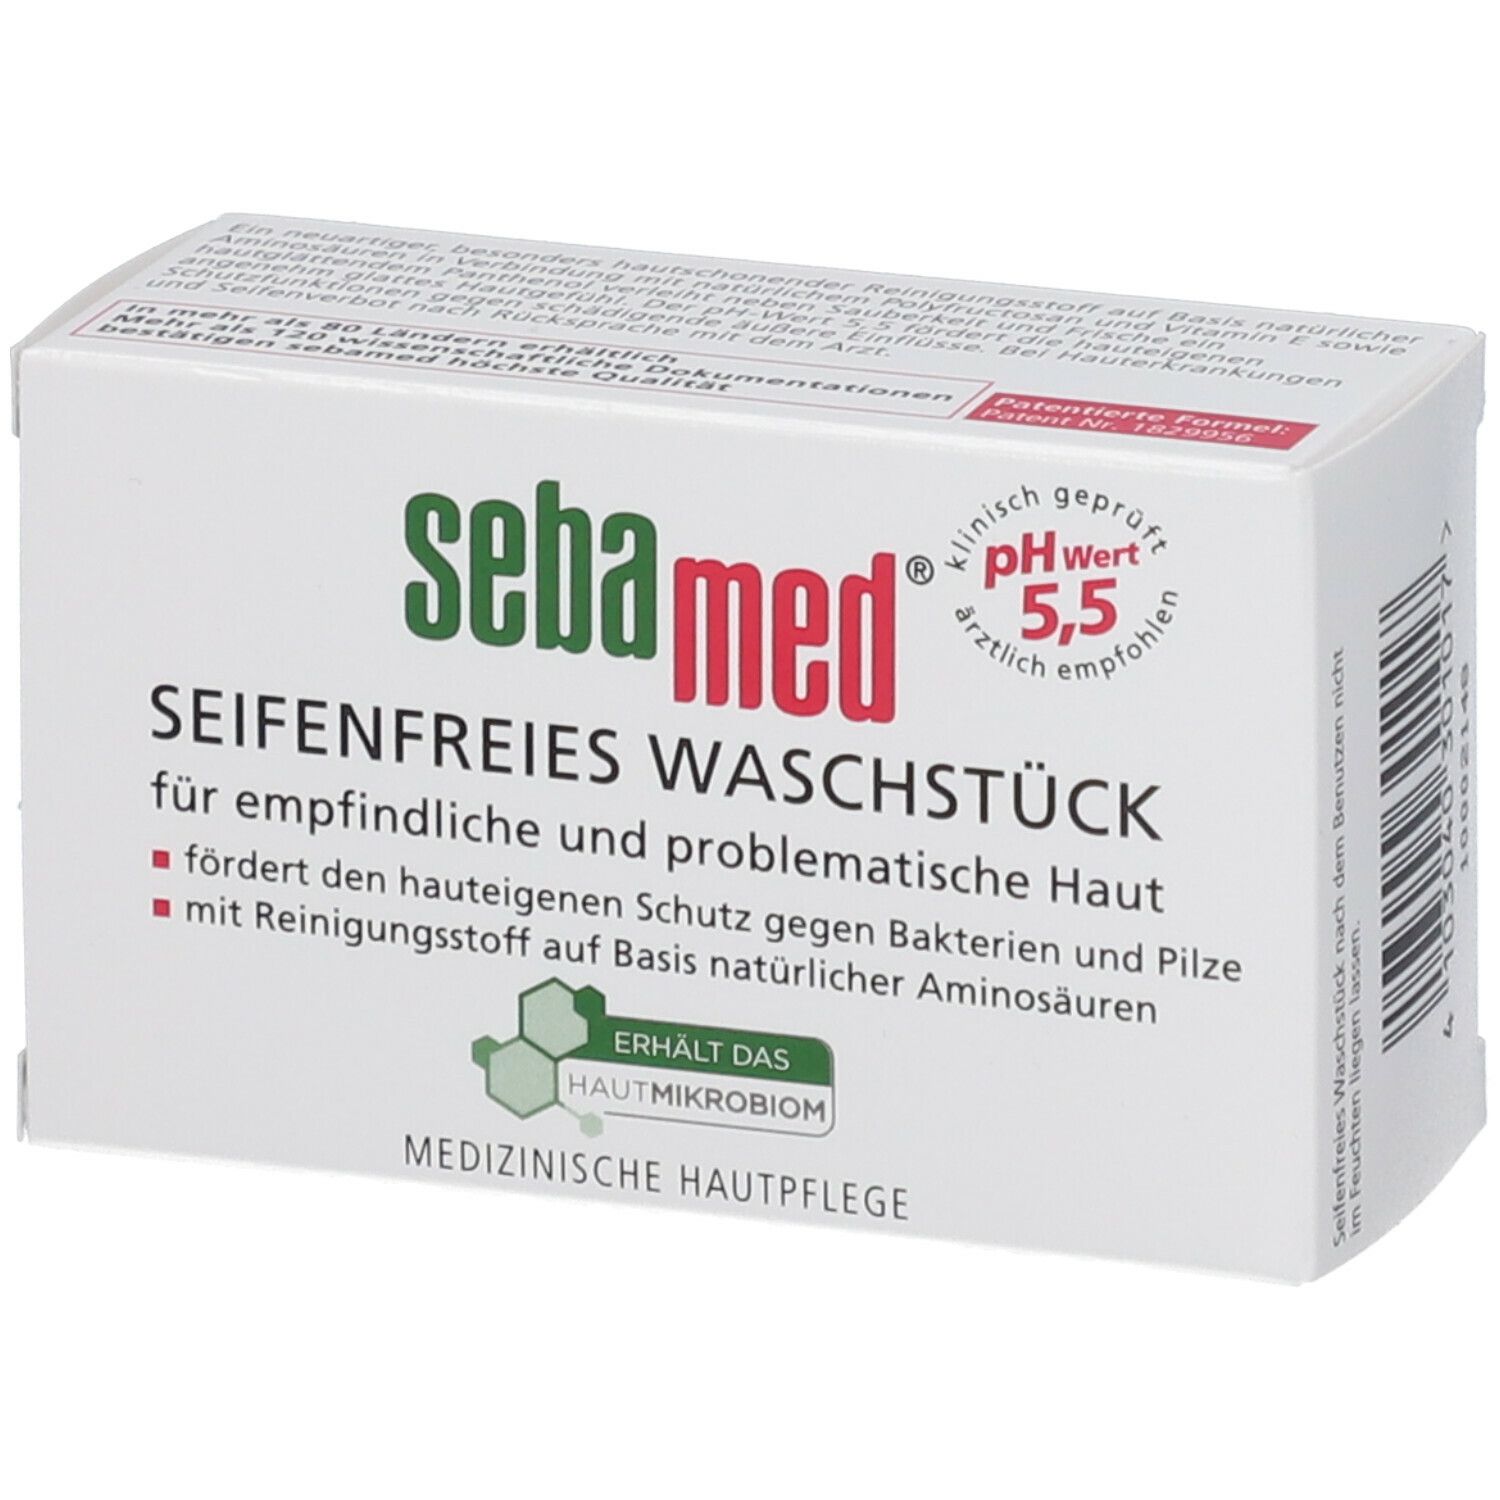 sebamed® seifenfreies Waschstück